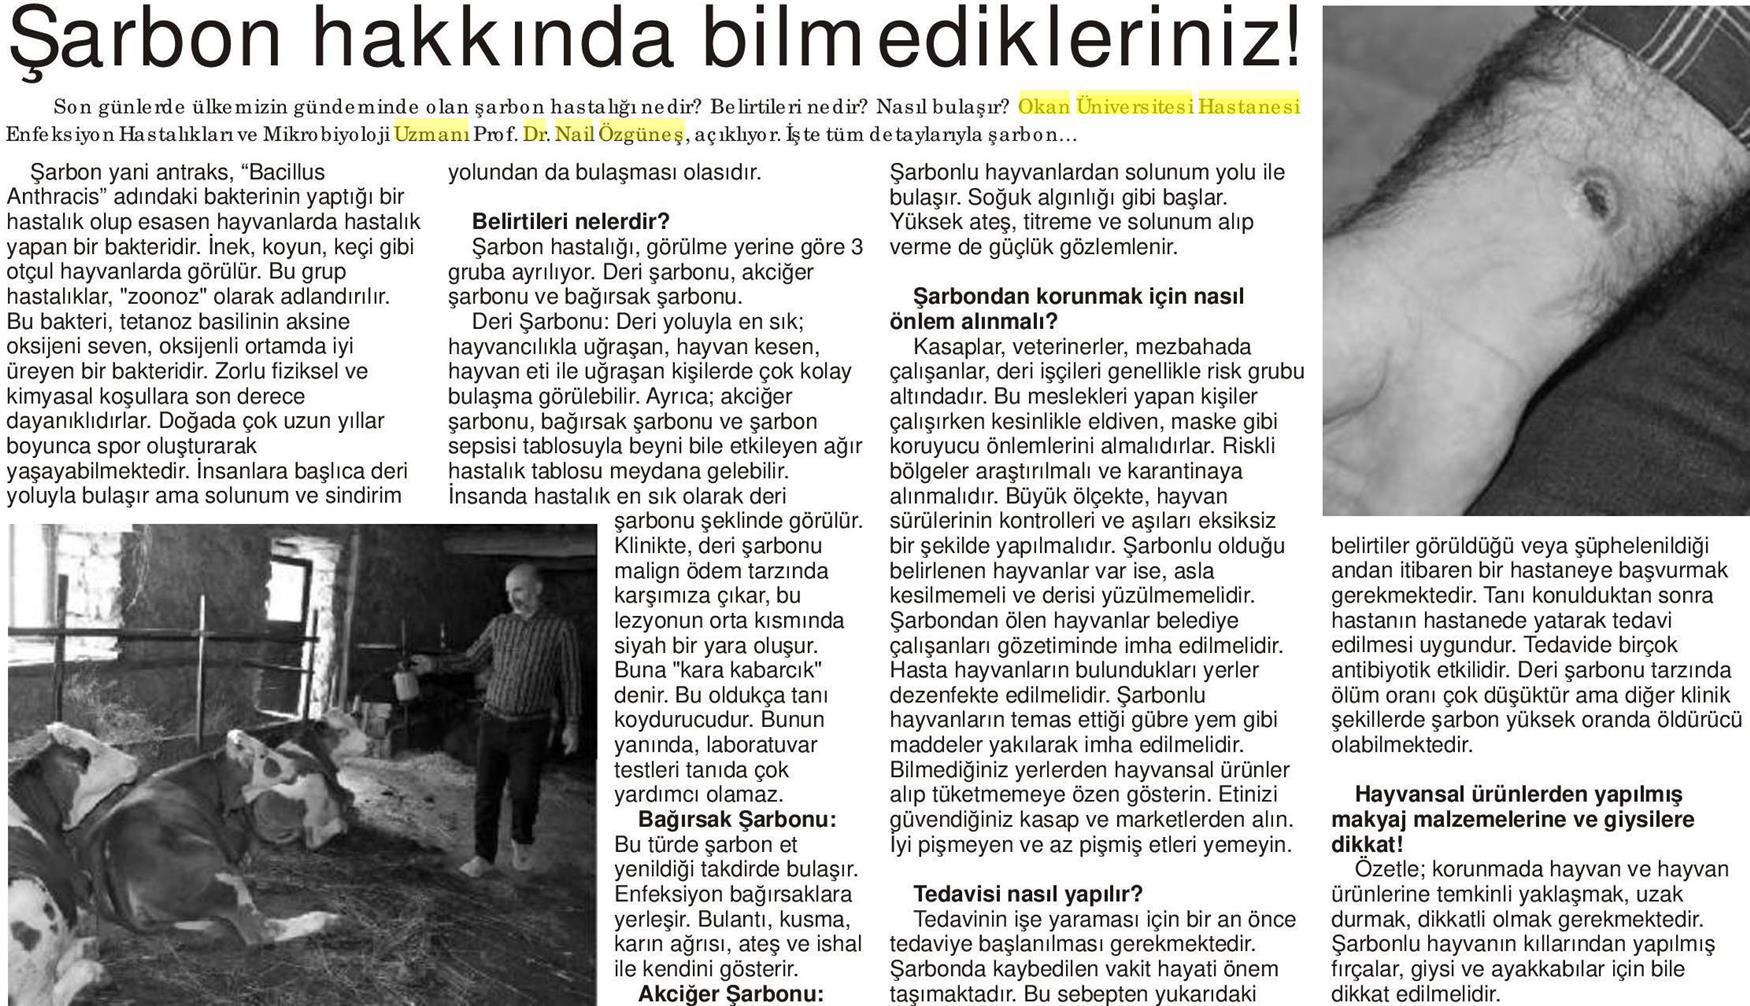 05.09.2018	Bodrum Ekspres Gazetesi	ŞARBON HAKKINDA BİLMEDİKLERİNİZ!